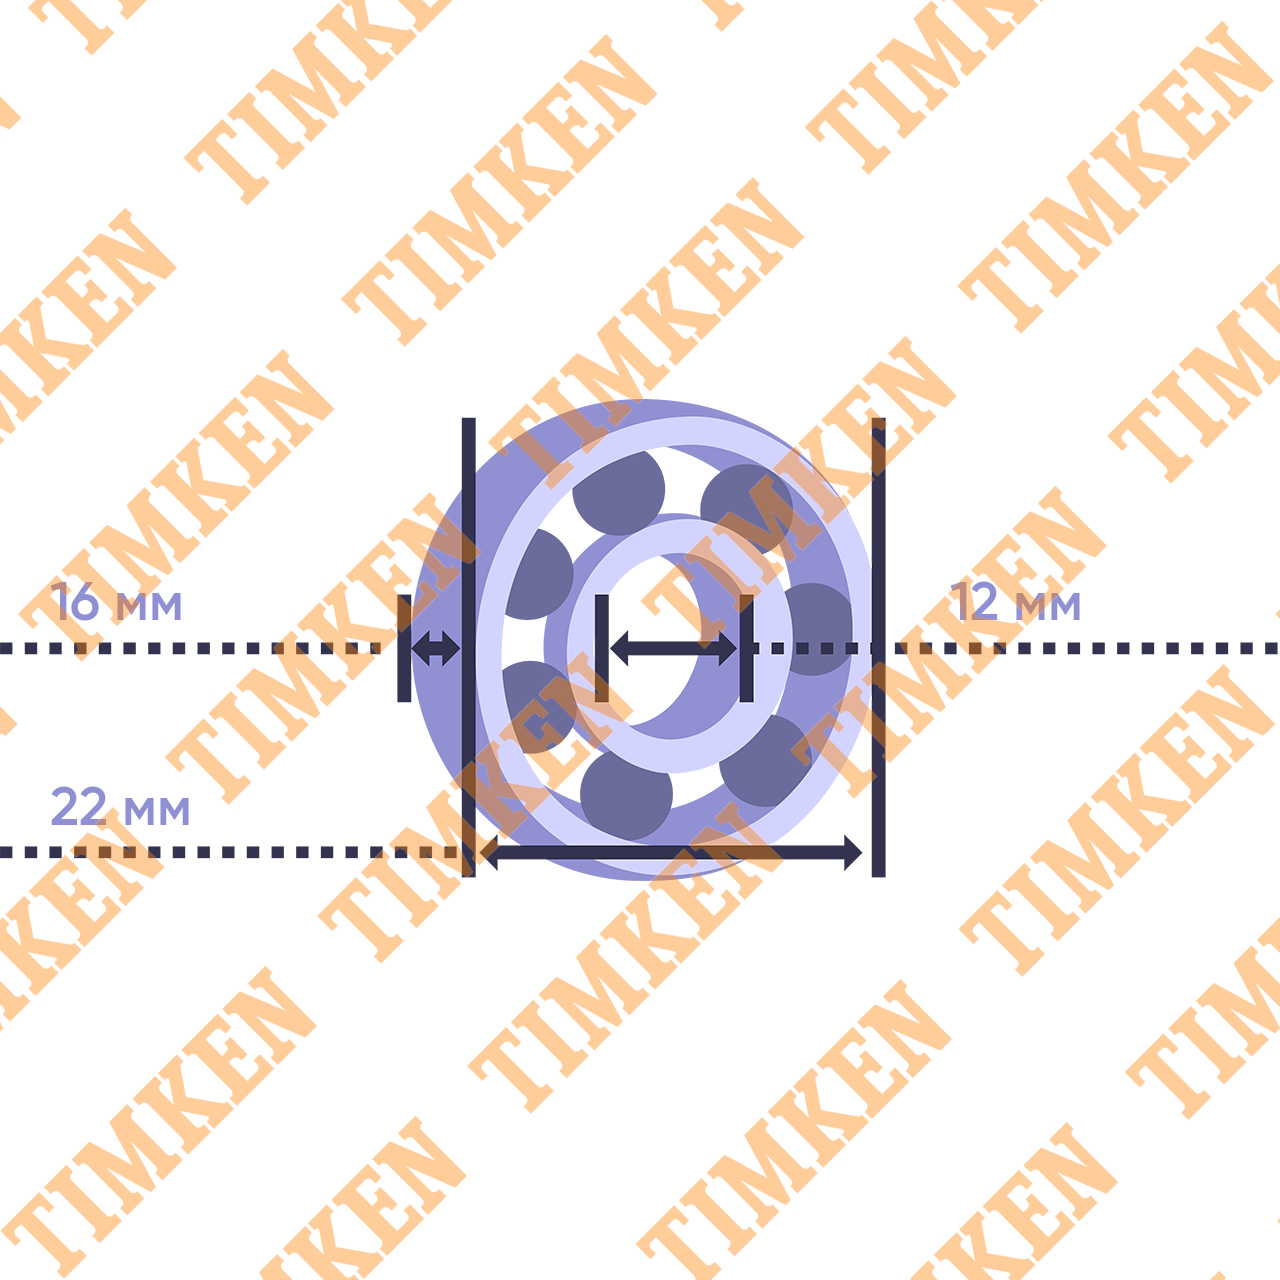 Подшипник игольчатый радиальный K 16x22x12 FV H86 (0-2)